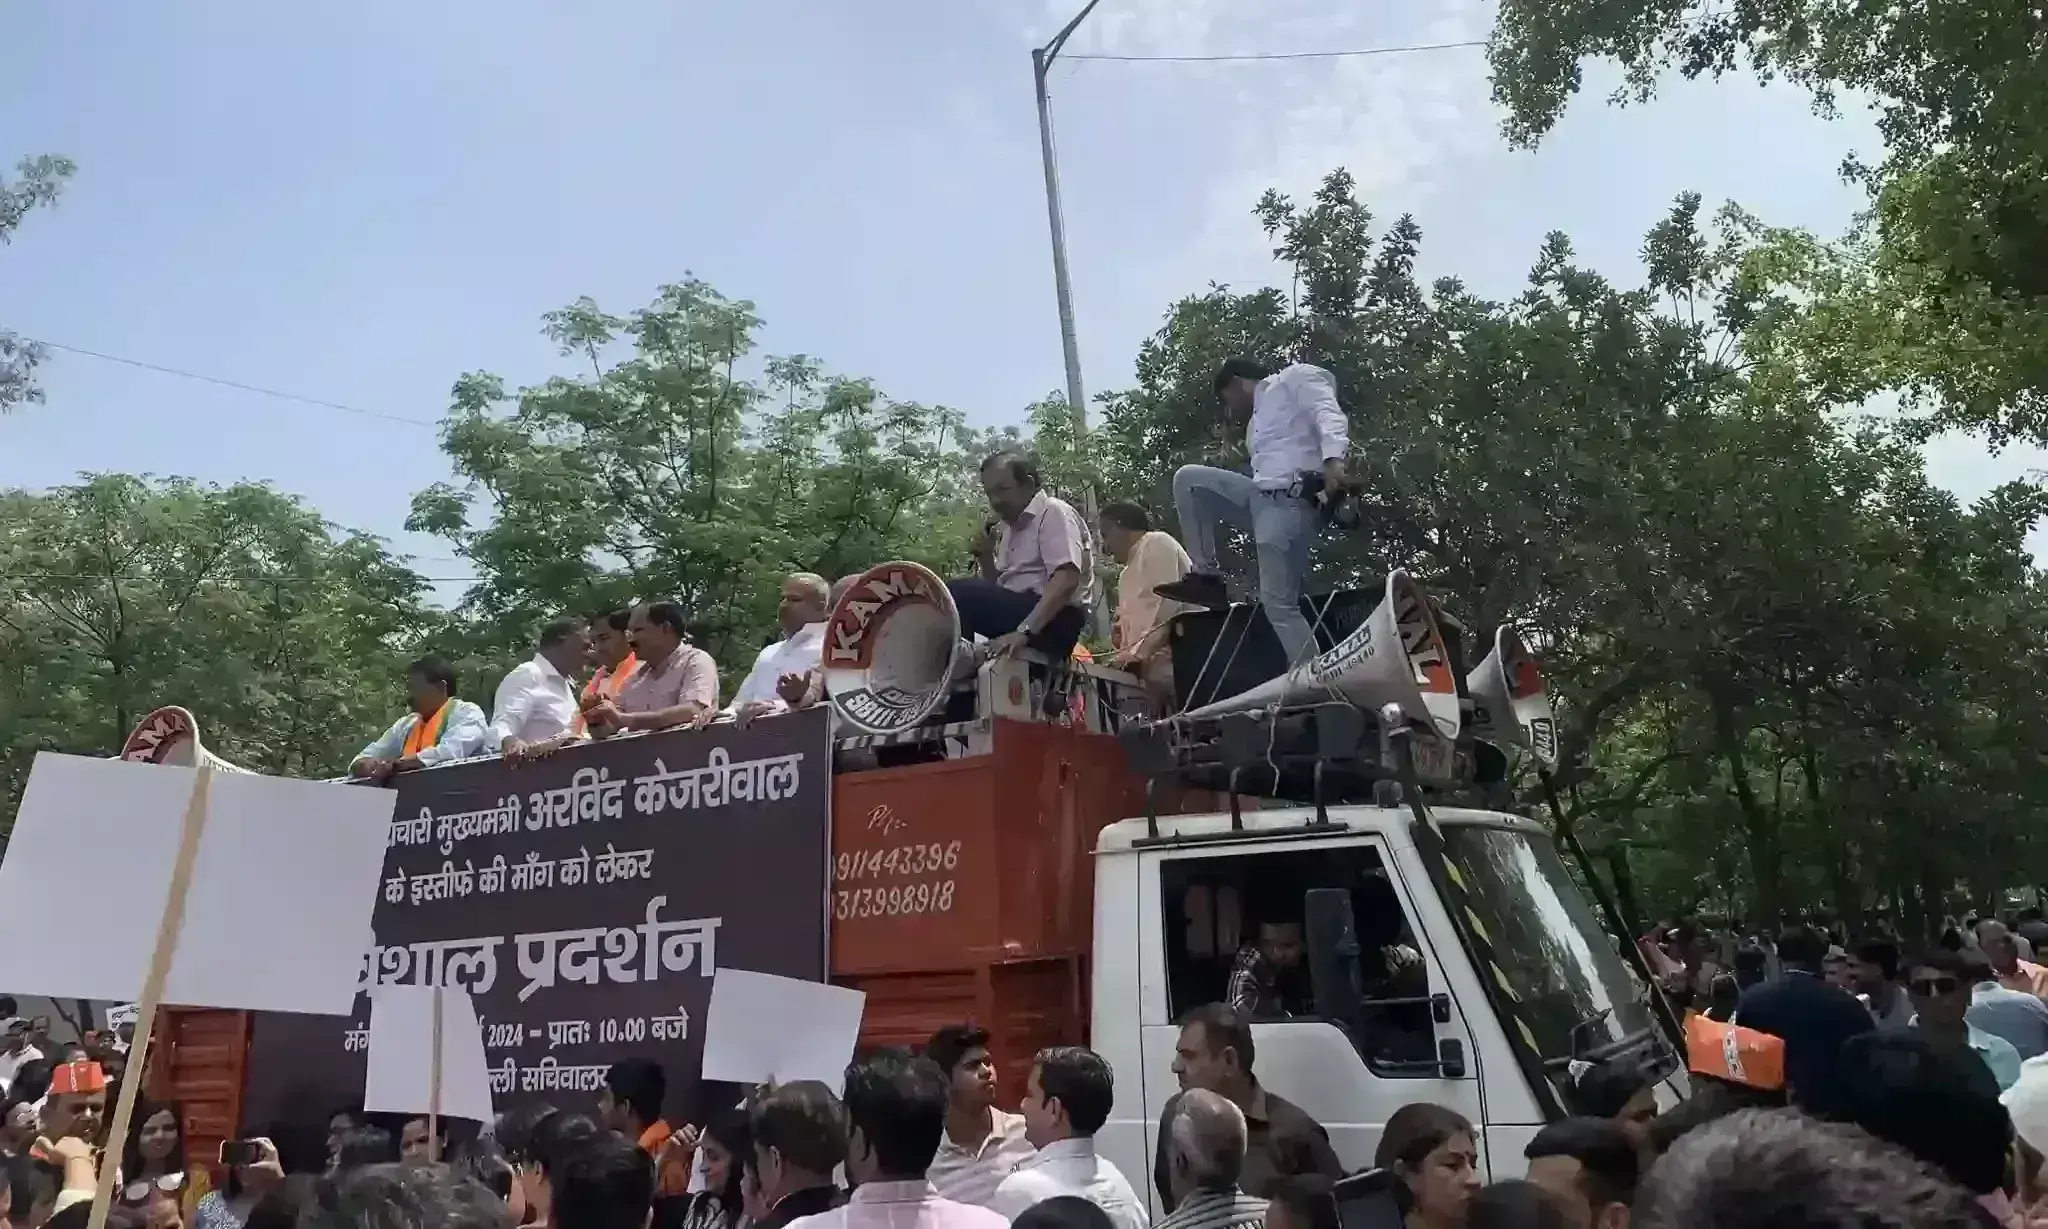 दिल्ली में सड़कों पर उतरे भाजपा कार्यकर्ता, आम आदमी पार्टी के खिलाफ किया प्रदर्शन